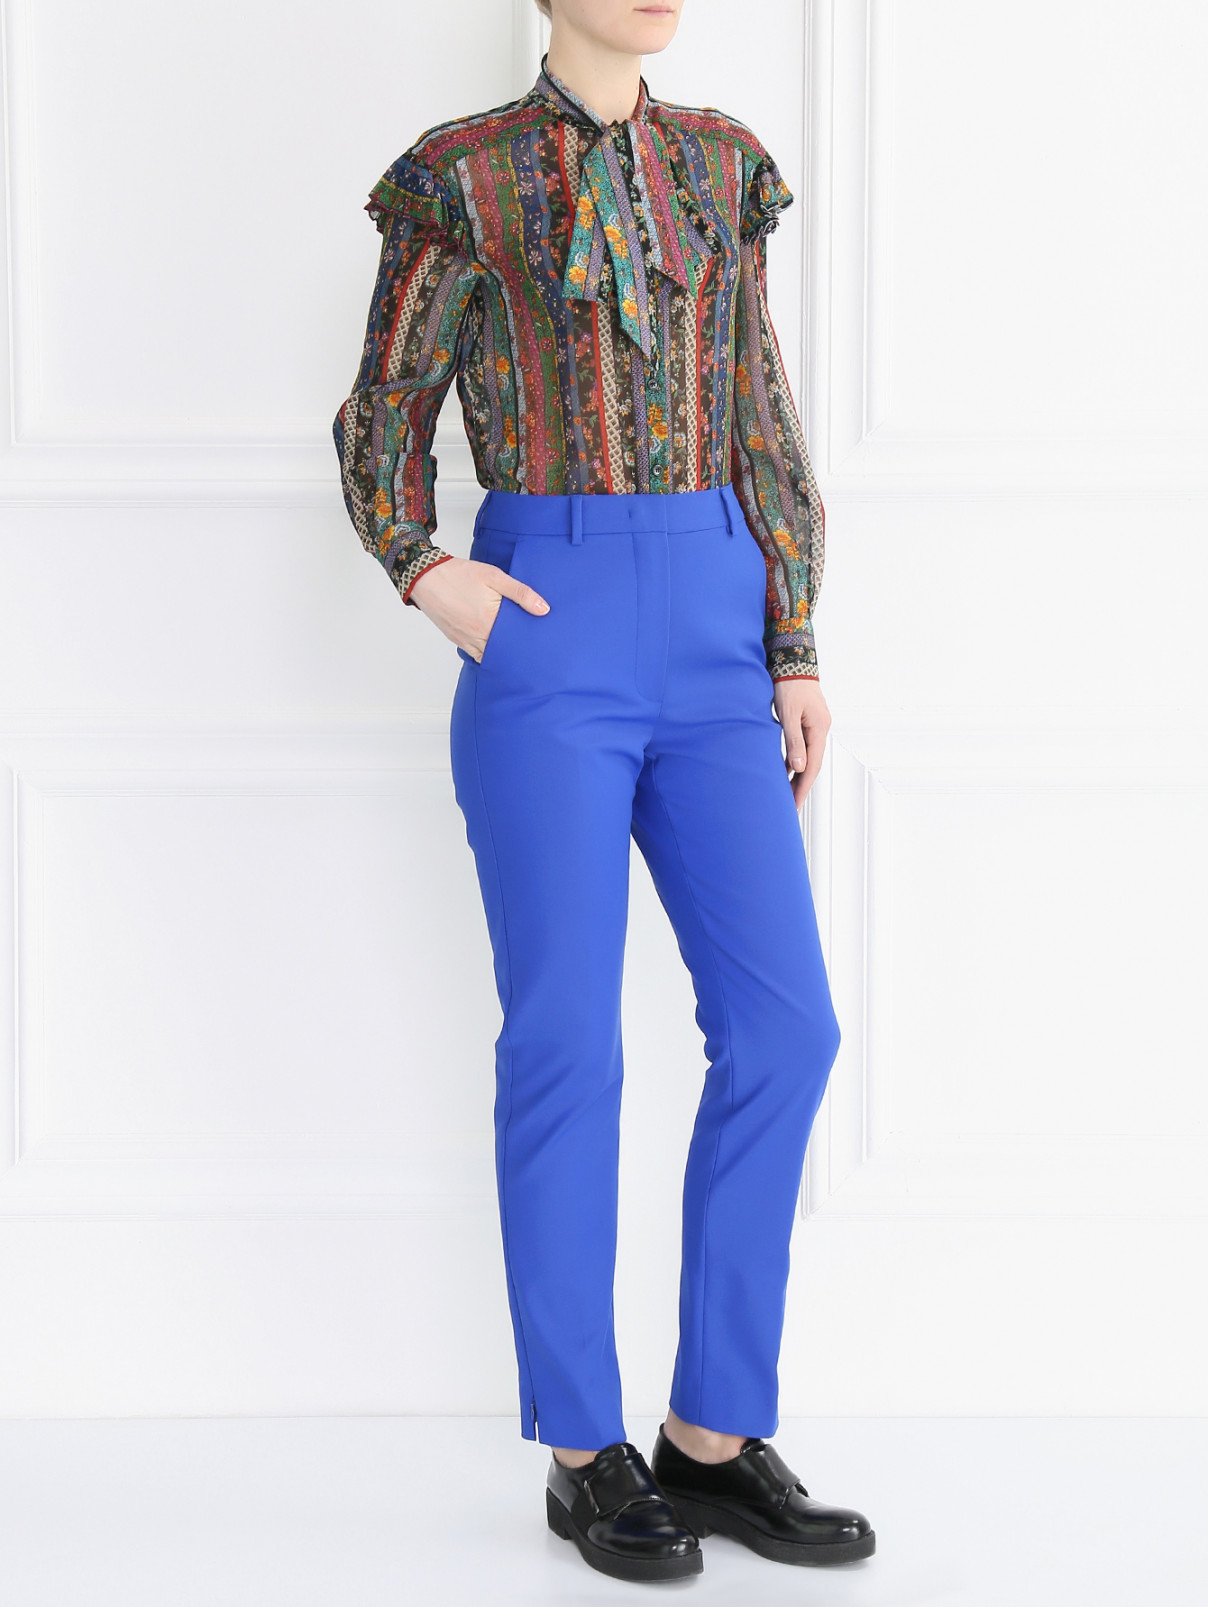 Блуза с длинным рукавом из шелка с узором Philosophy di Lorenzo Serafini  –  Модель Общий вид  – Цвет:  Узор